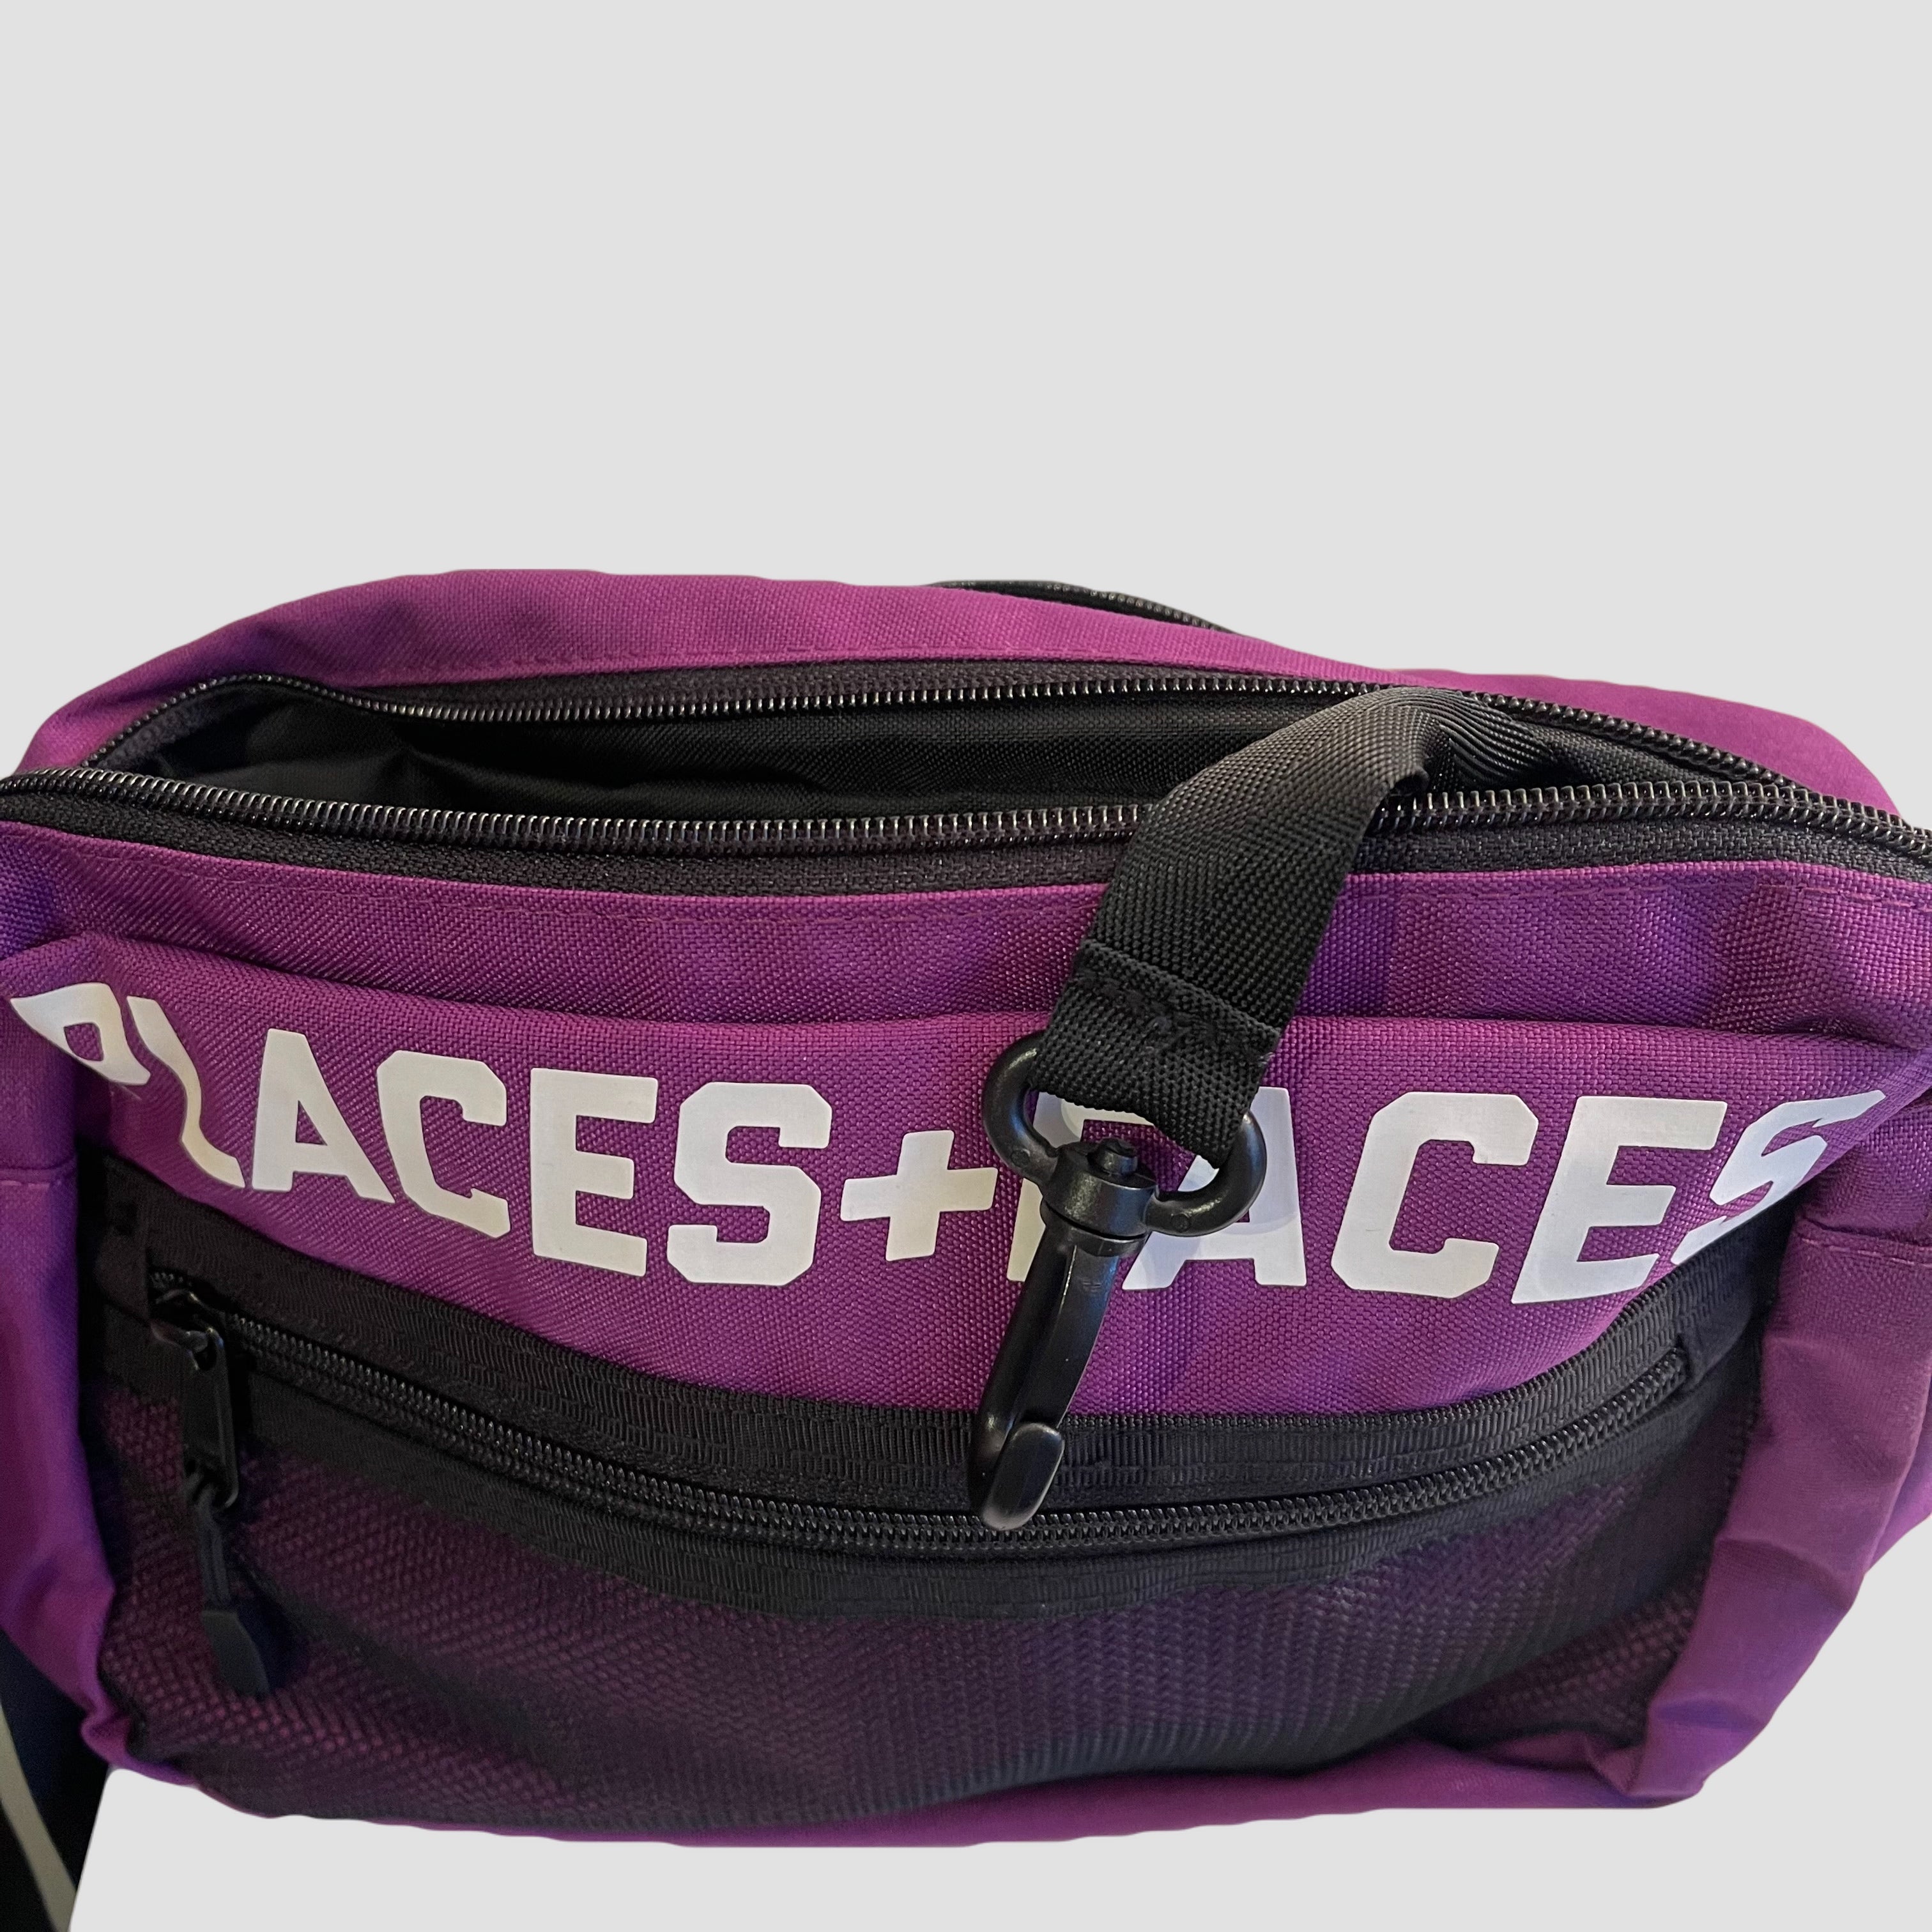 Places Plus Faces Side Bag / Messenger Original Allure